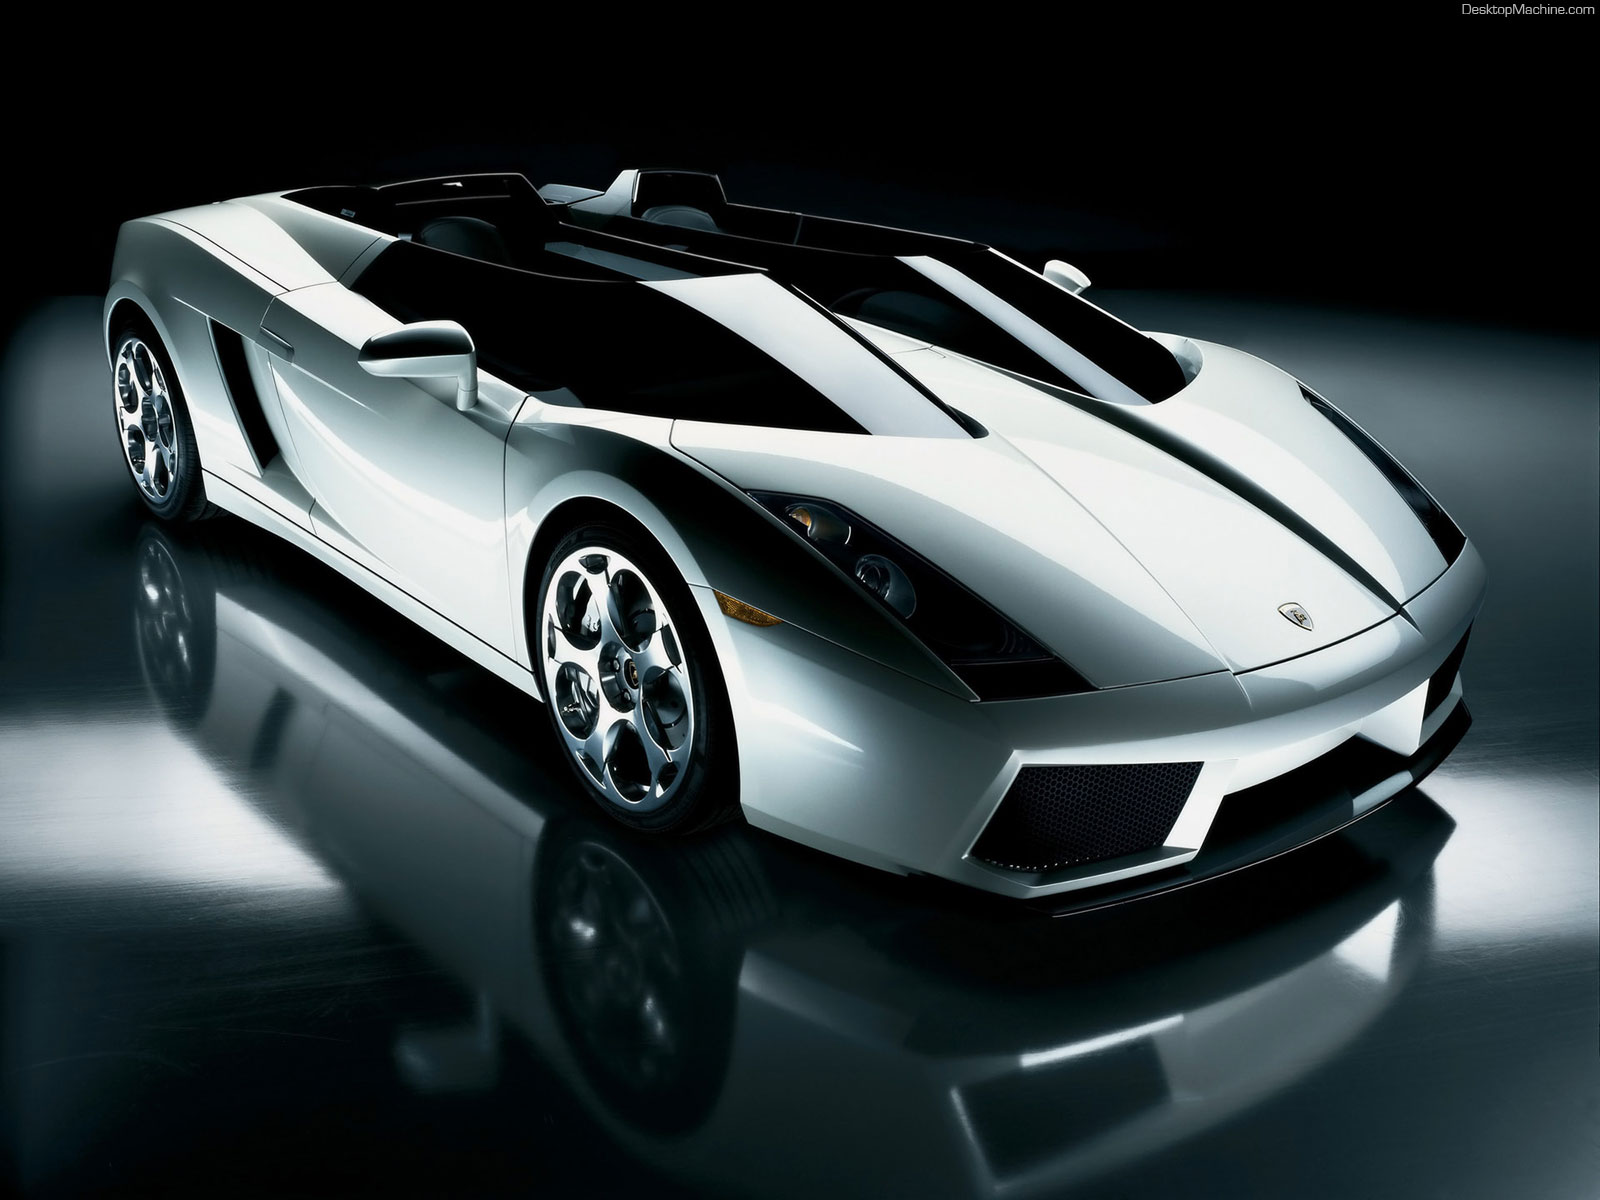 Télécharger des fonds d'écran Lamborghini Gallardo HD